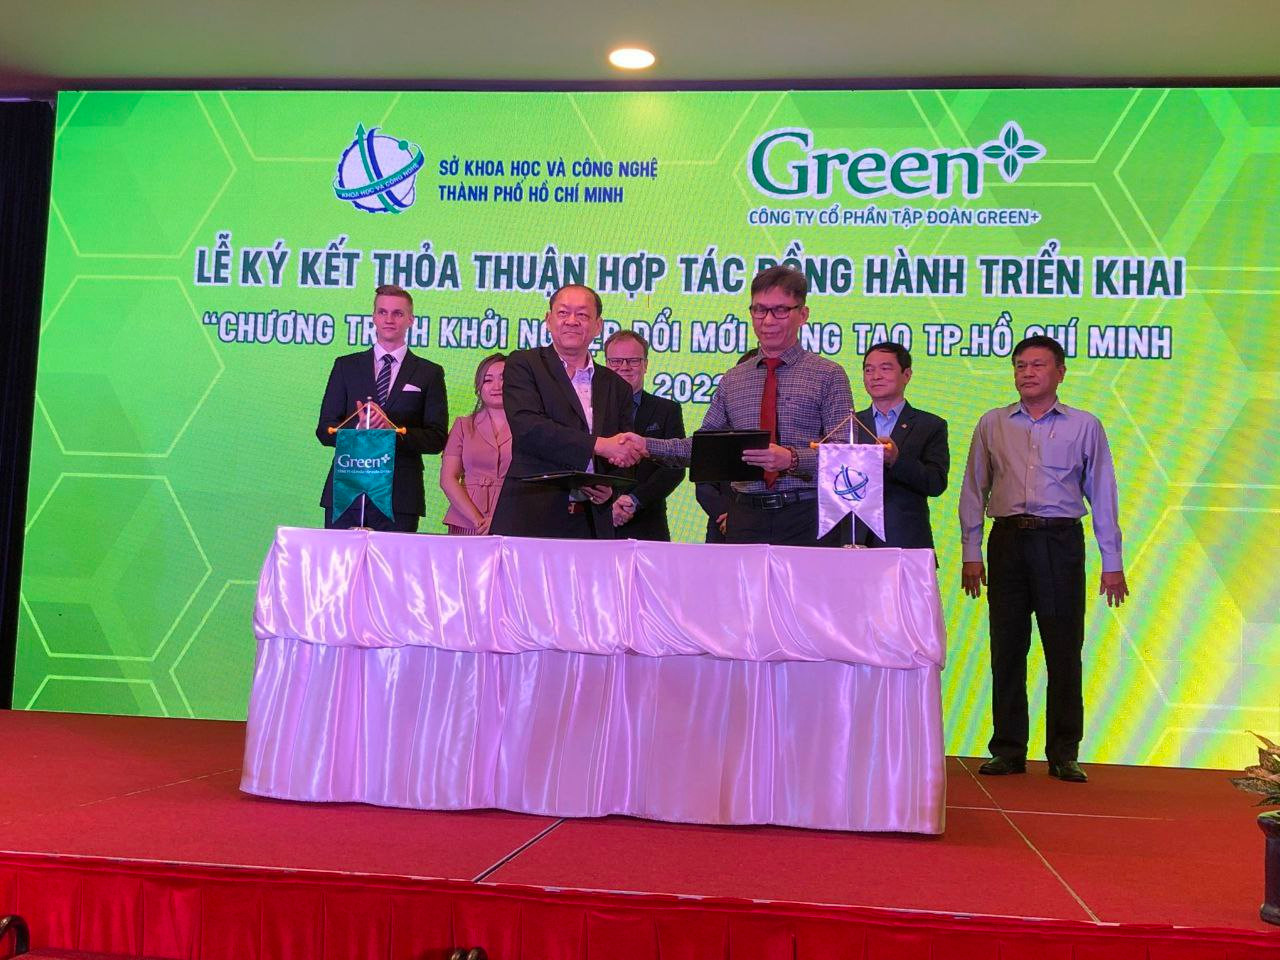 Sở Khoa học và Công nghệ TP.HCM ký thỏa thuận với Công ty CP Tập đoàn Green+